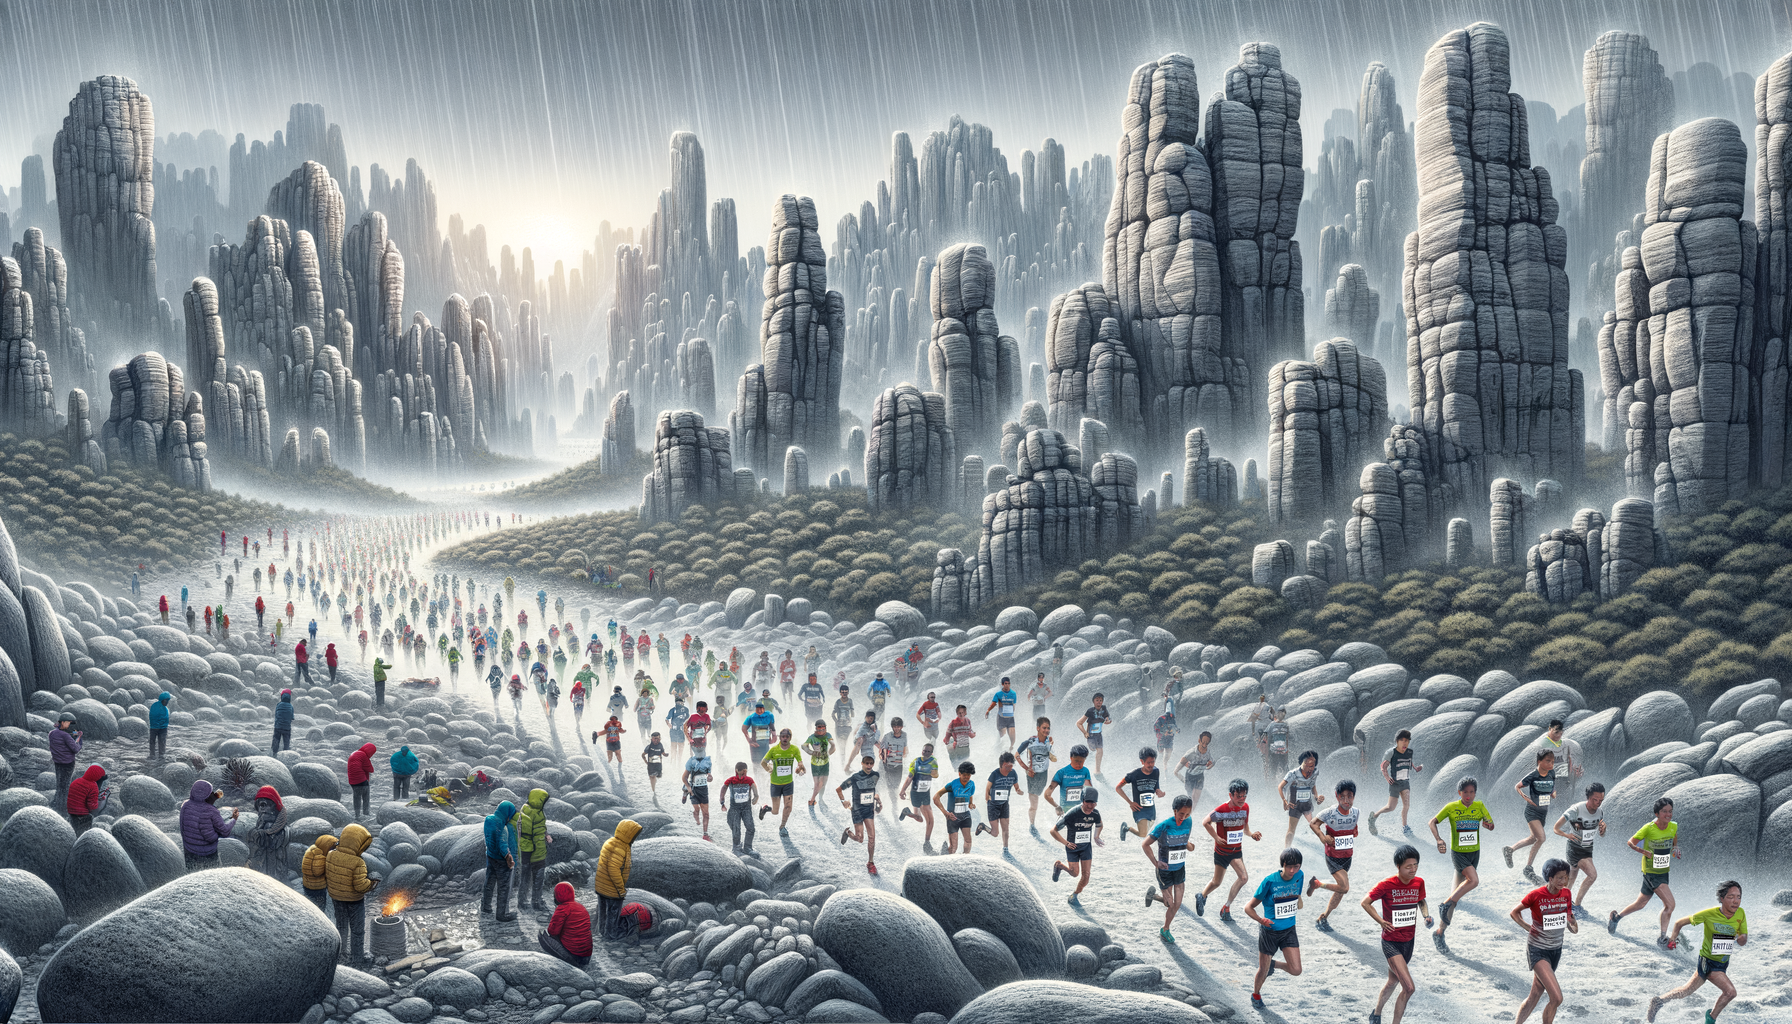 В Каменном лесу Хуанхэ, Китай произошла трагедия. Во время ультрамарафона на 100 километров по пересеченной местности, 21 участник погиб от переохлаждения.